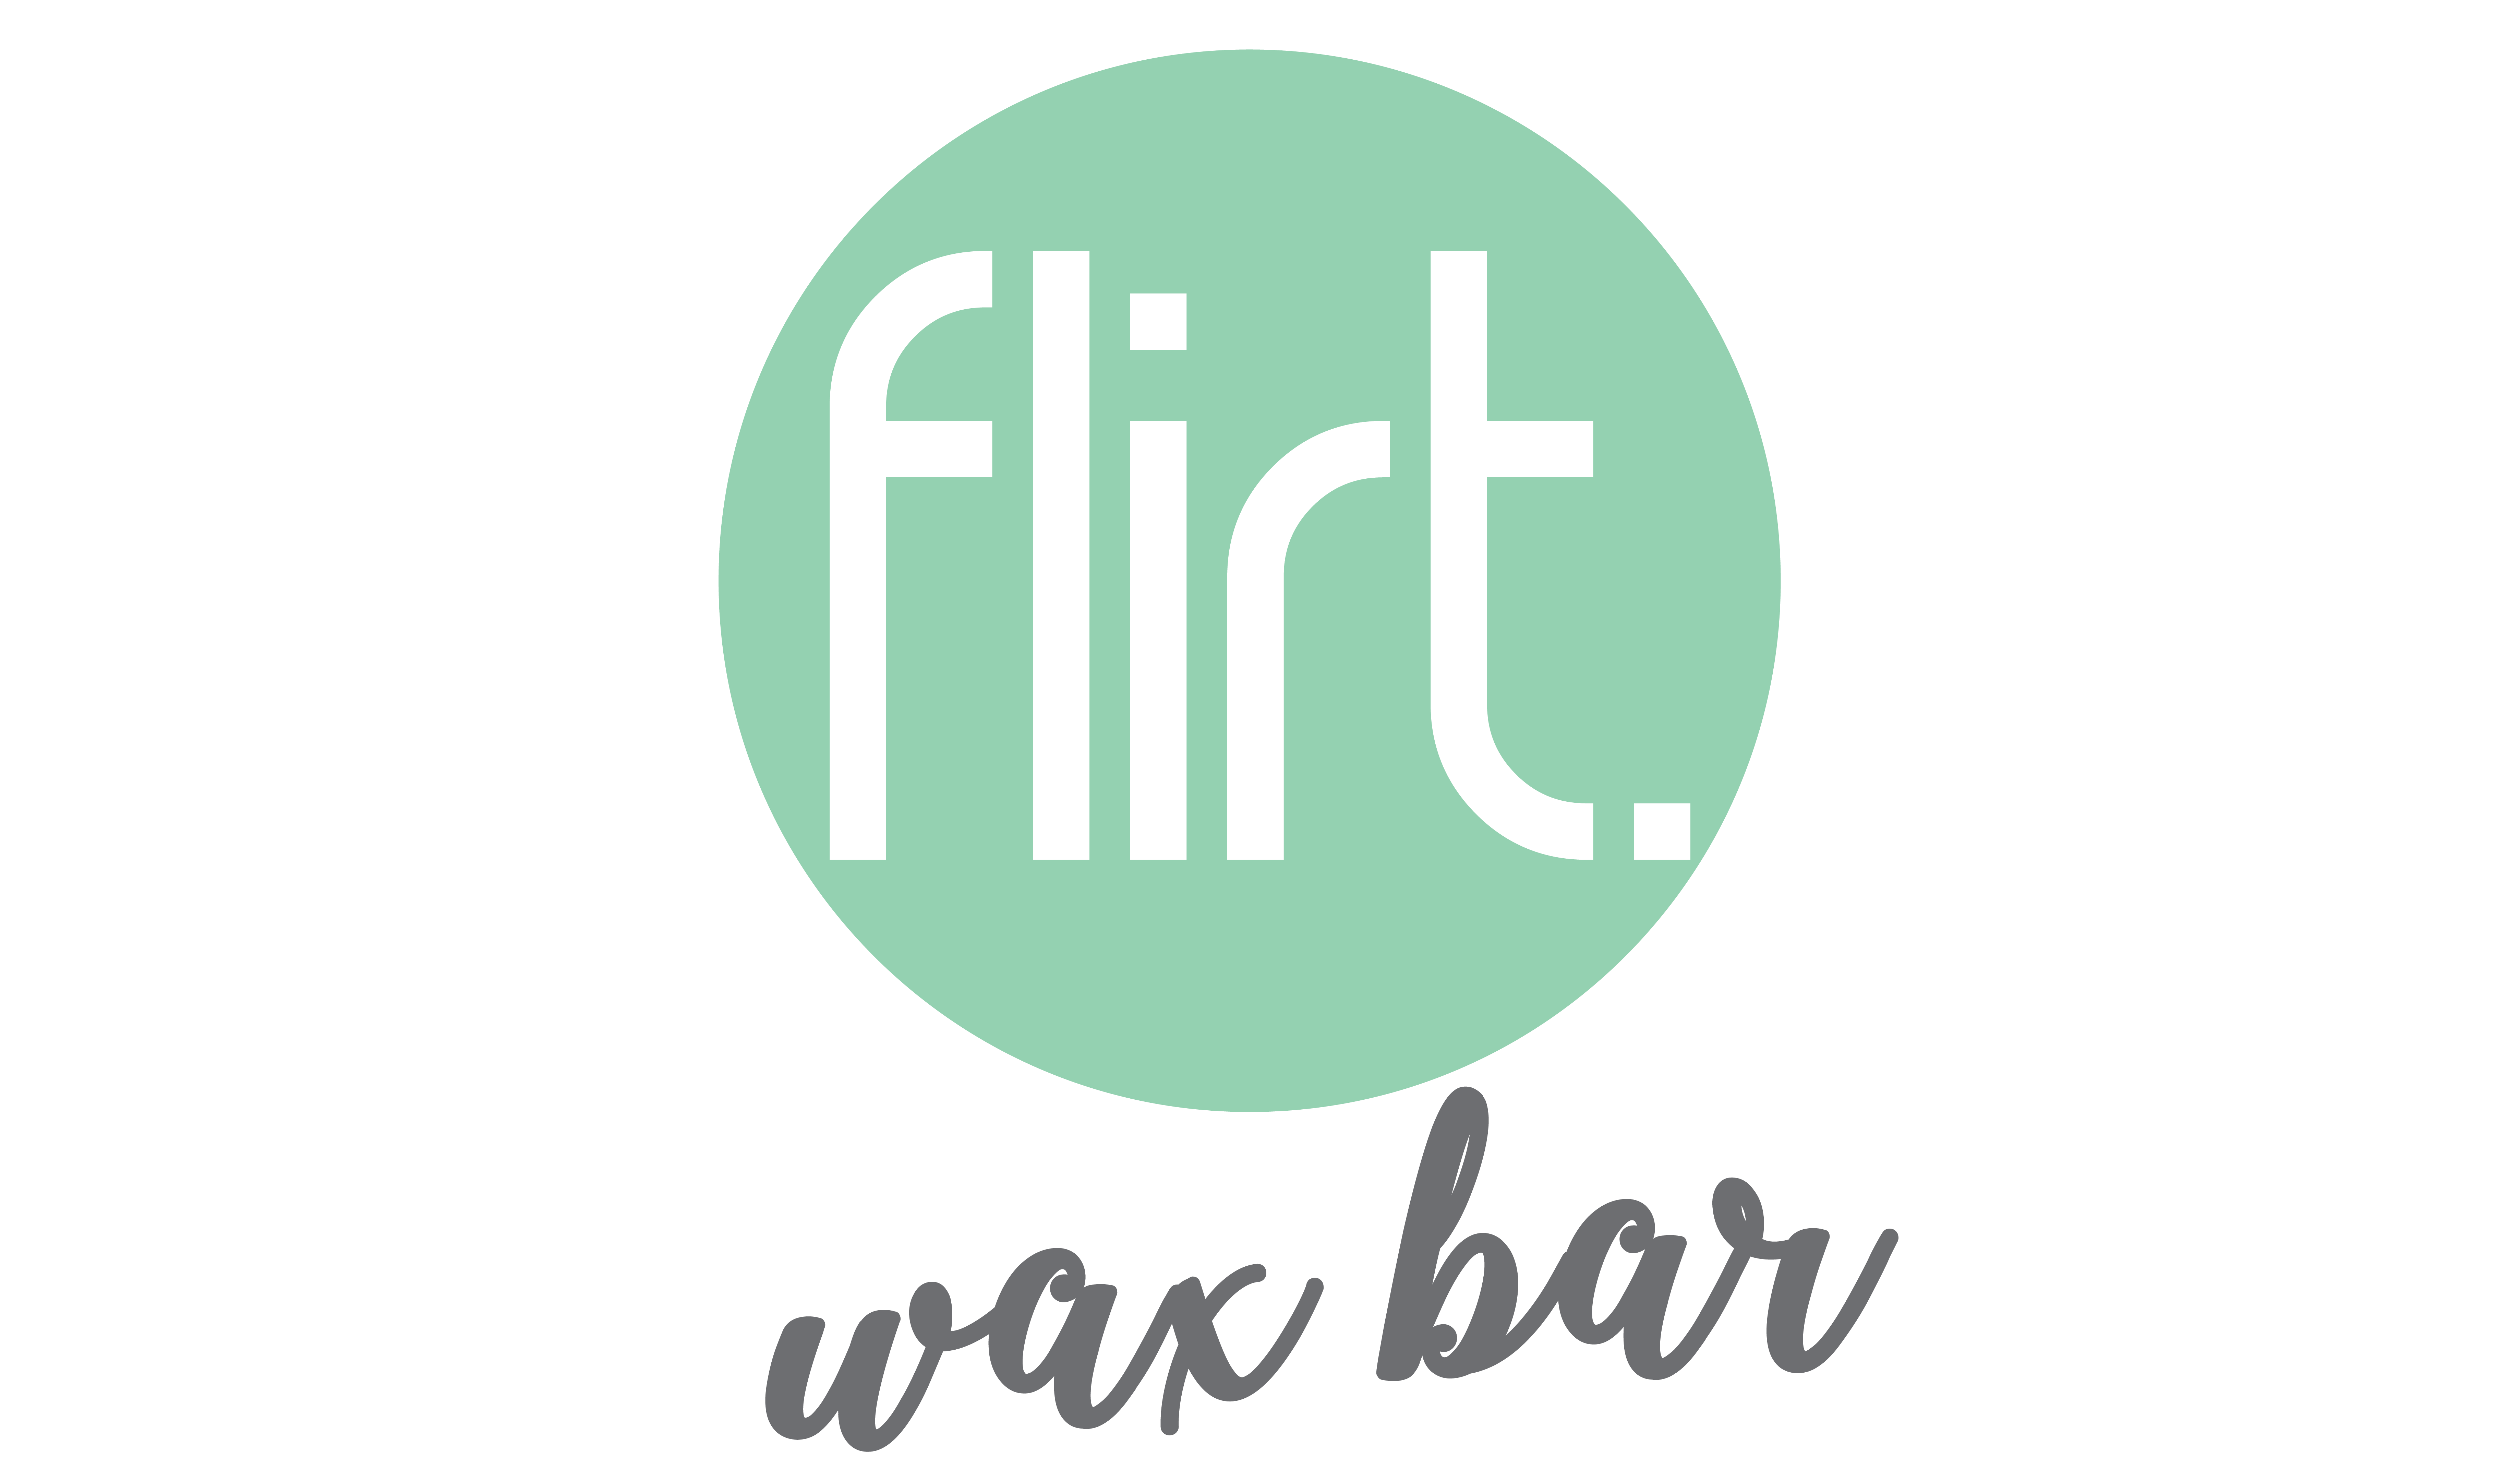 Flirt Wax Bar